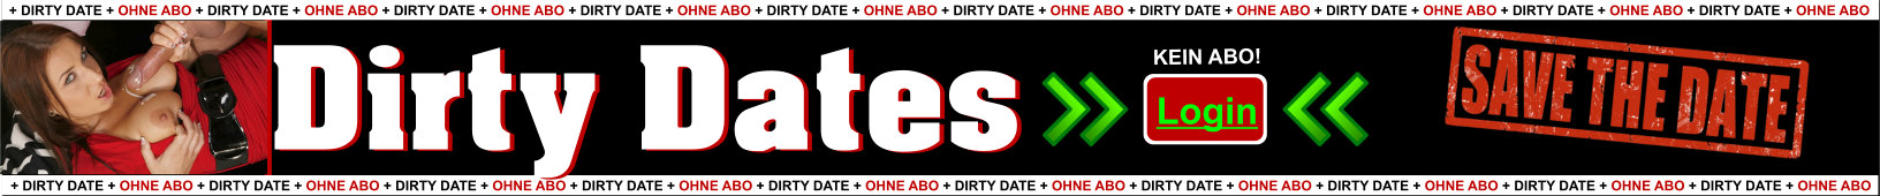 Dirty Dates mit heissen Singles auch ohne Abo chatten,flirten und daten